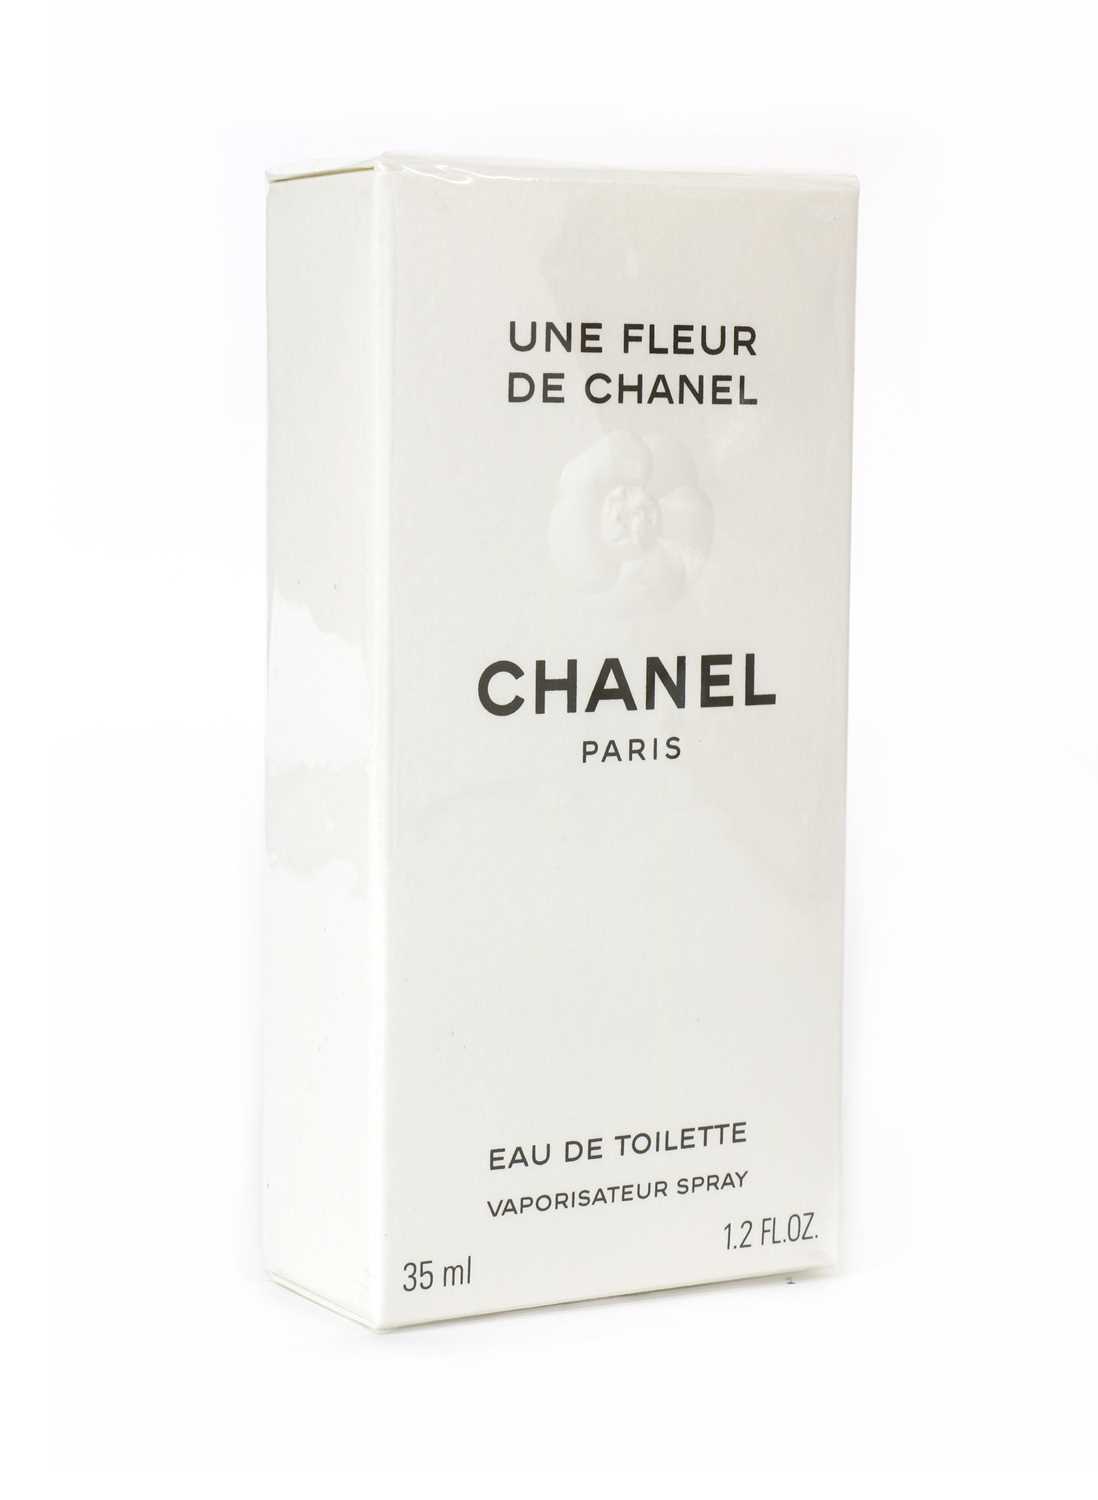 Lot 240 - Une Fleur de Chanel, Eau de Toilette